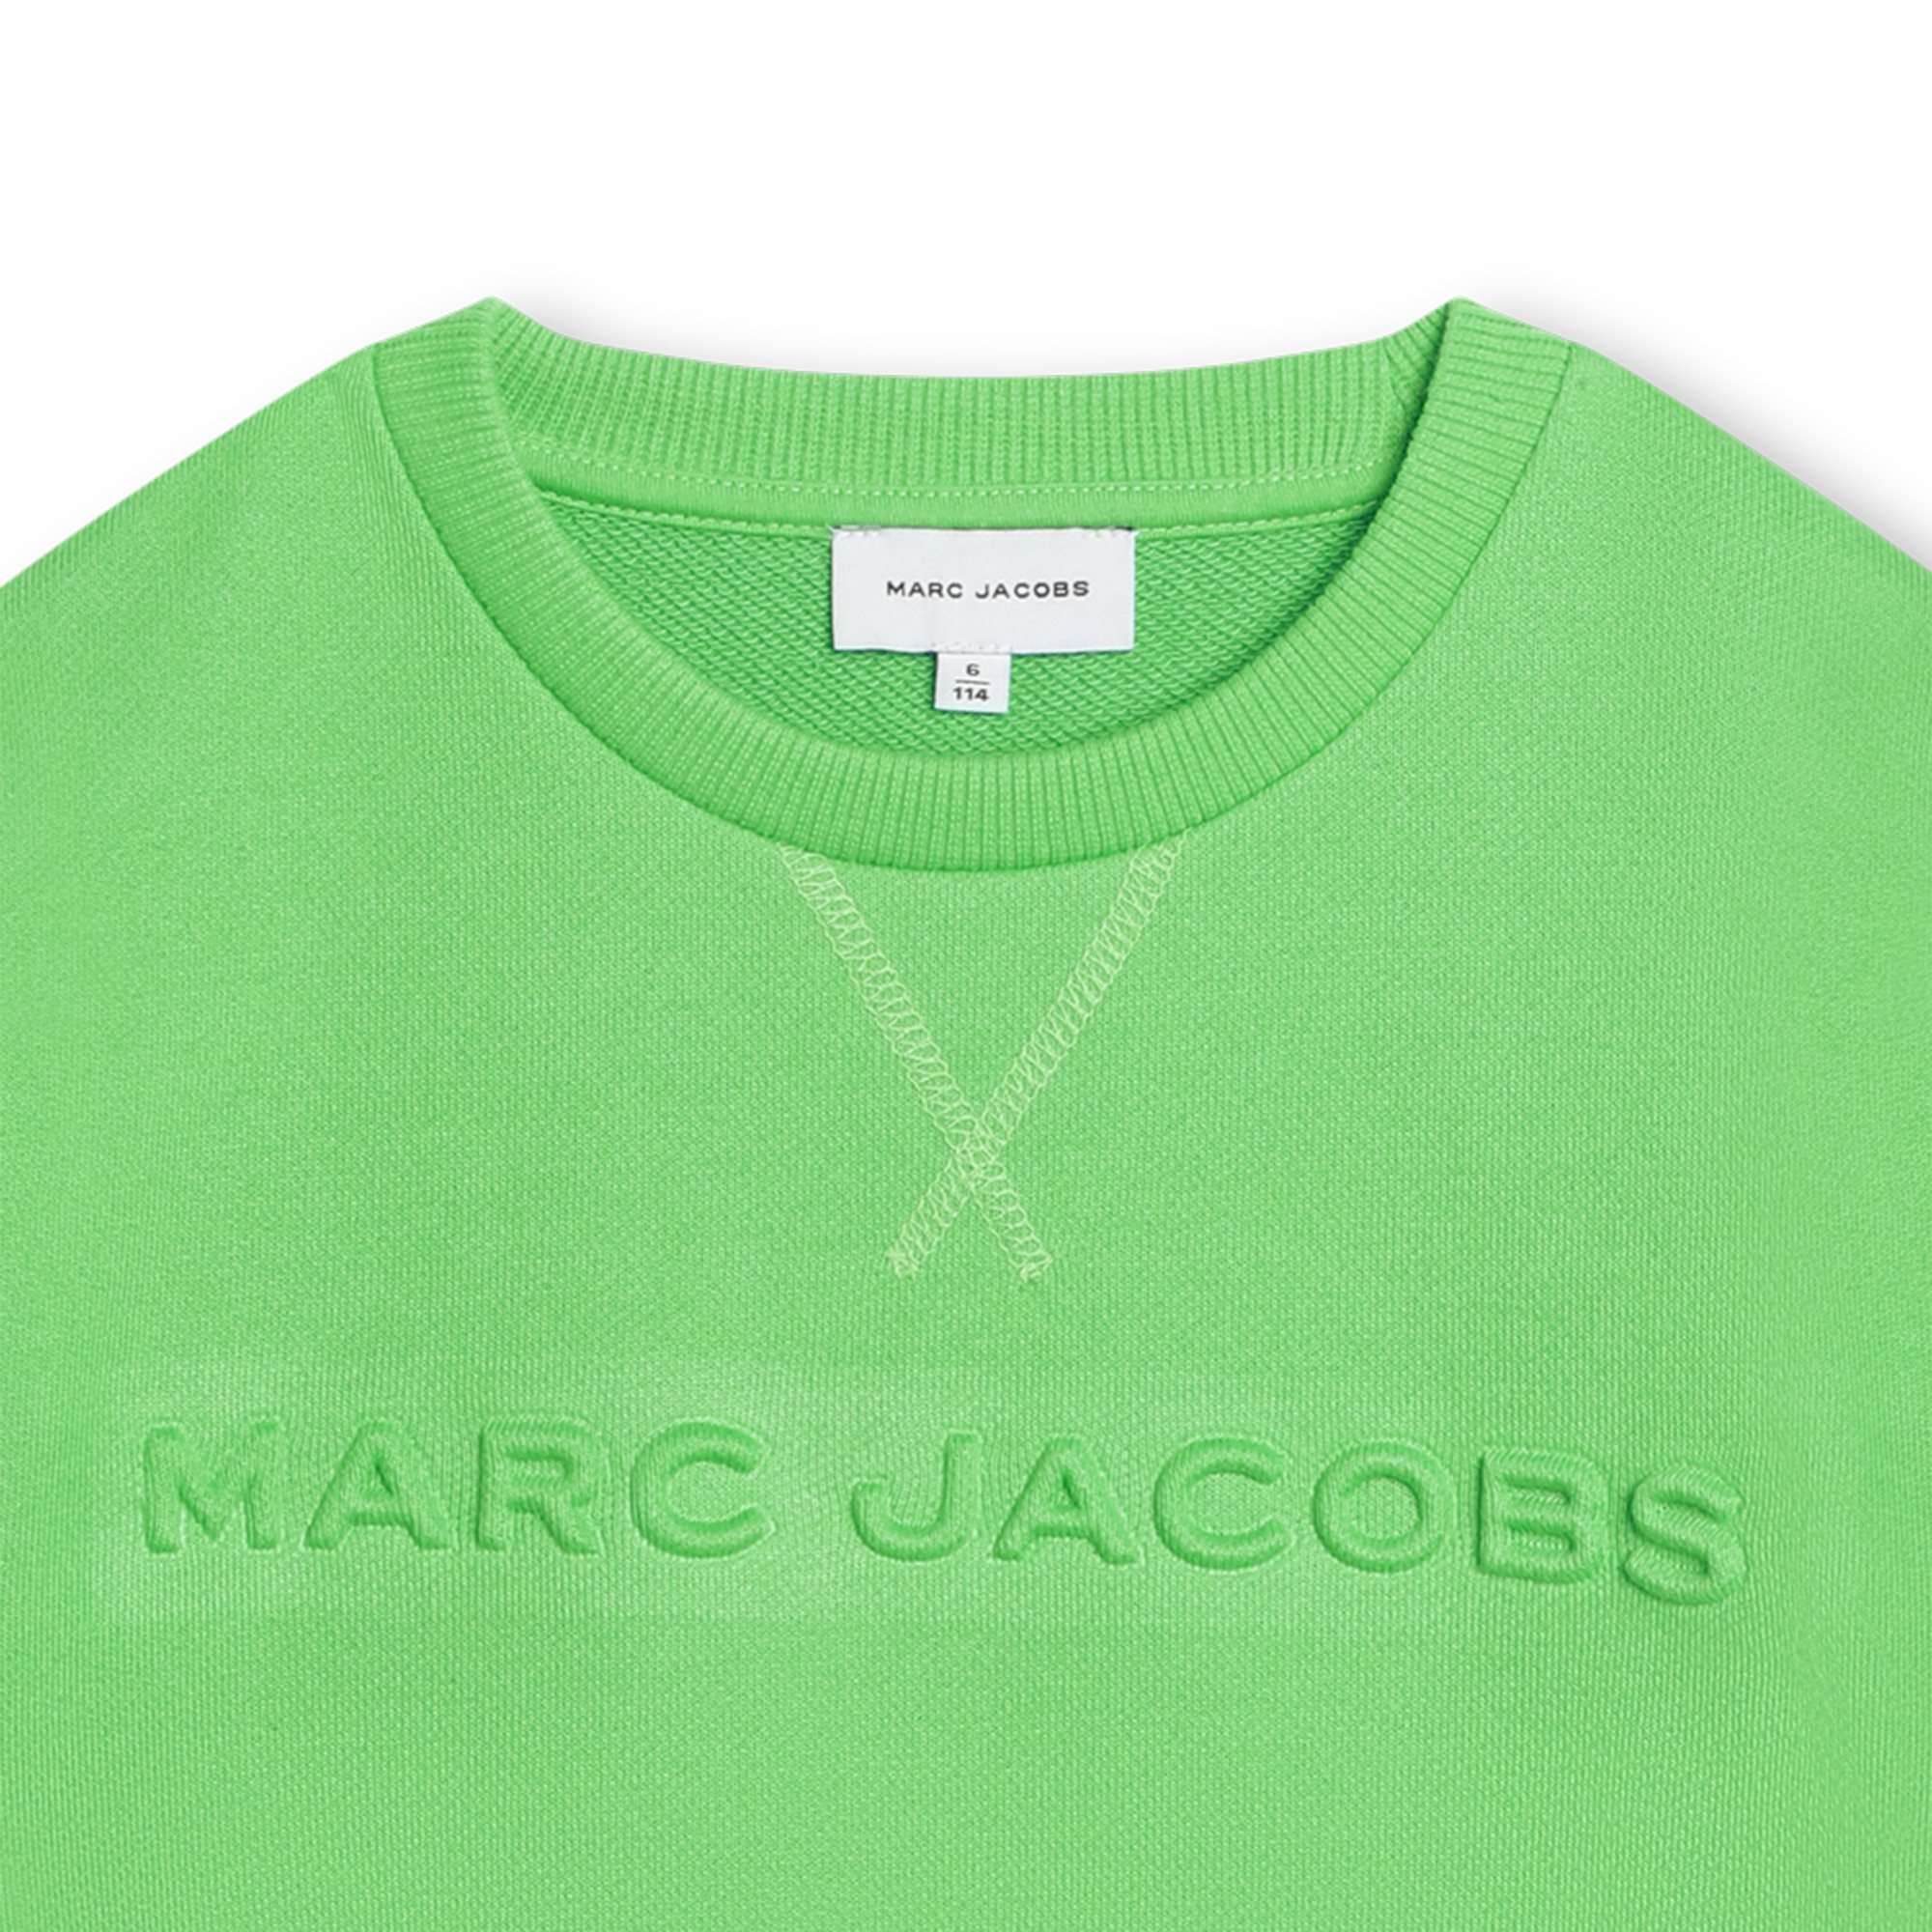 Sweater mit eingeprägtem Logo MARC JACOBS Für UNISEX